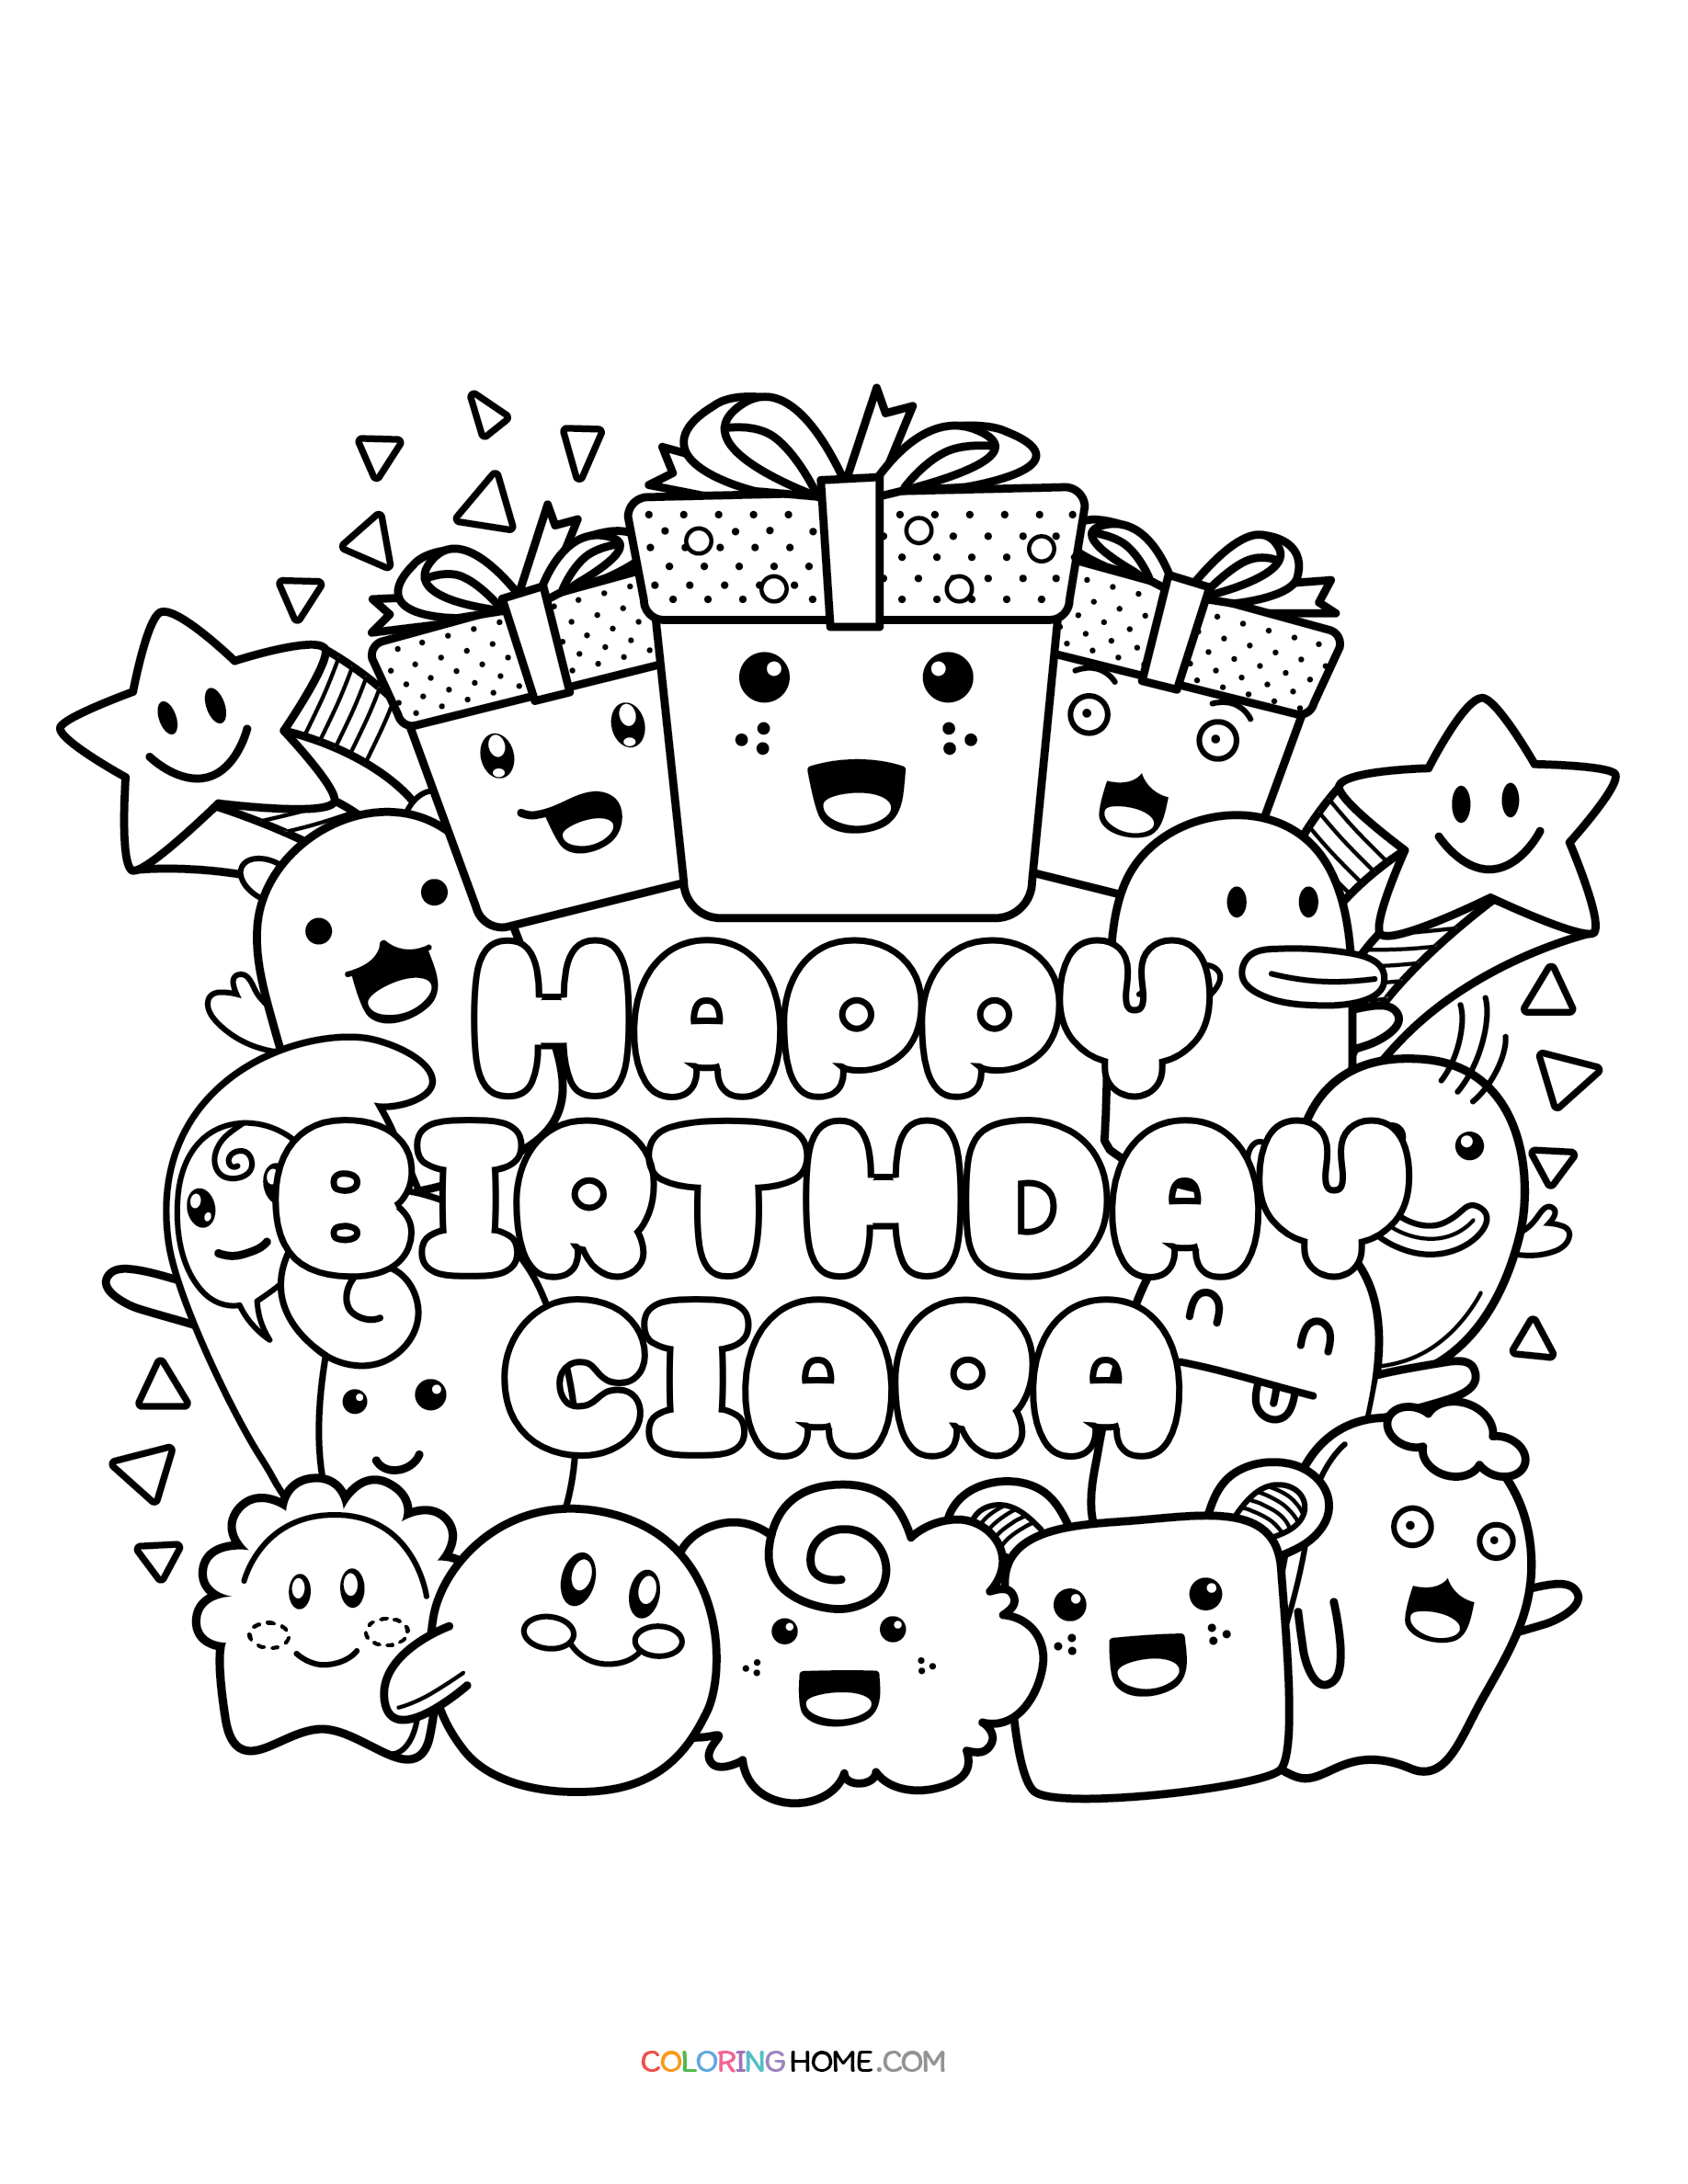 Happy Birthday Ciara coloring page